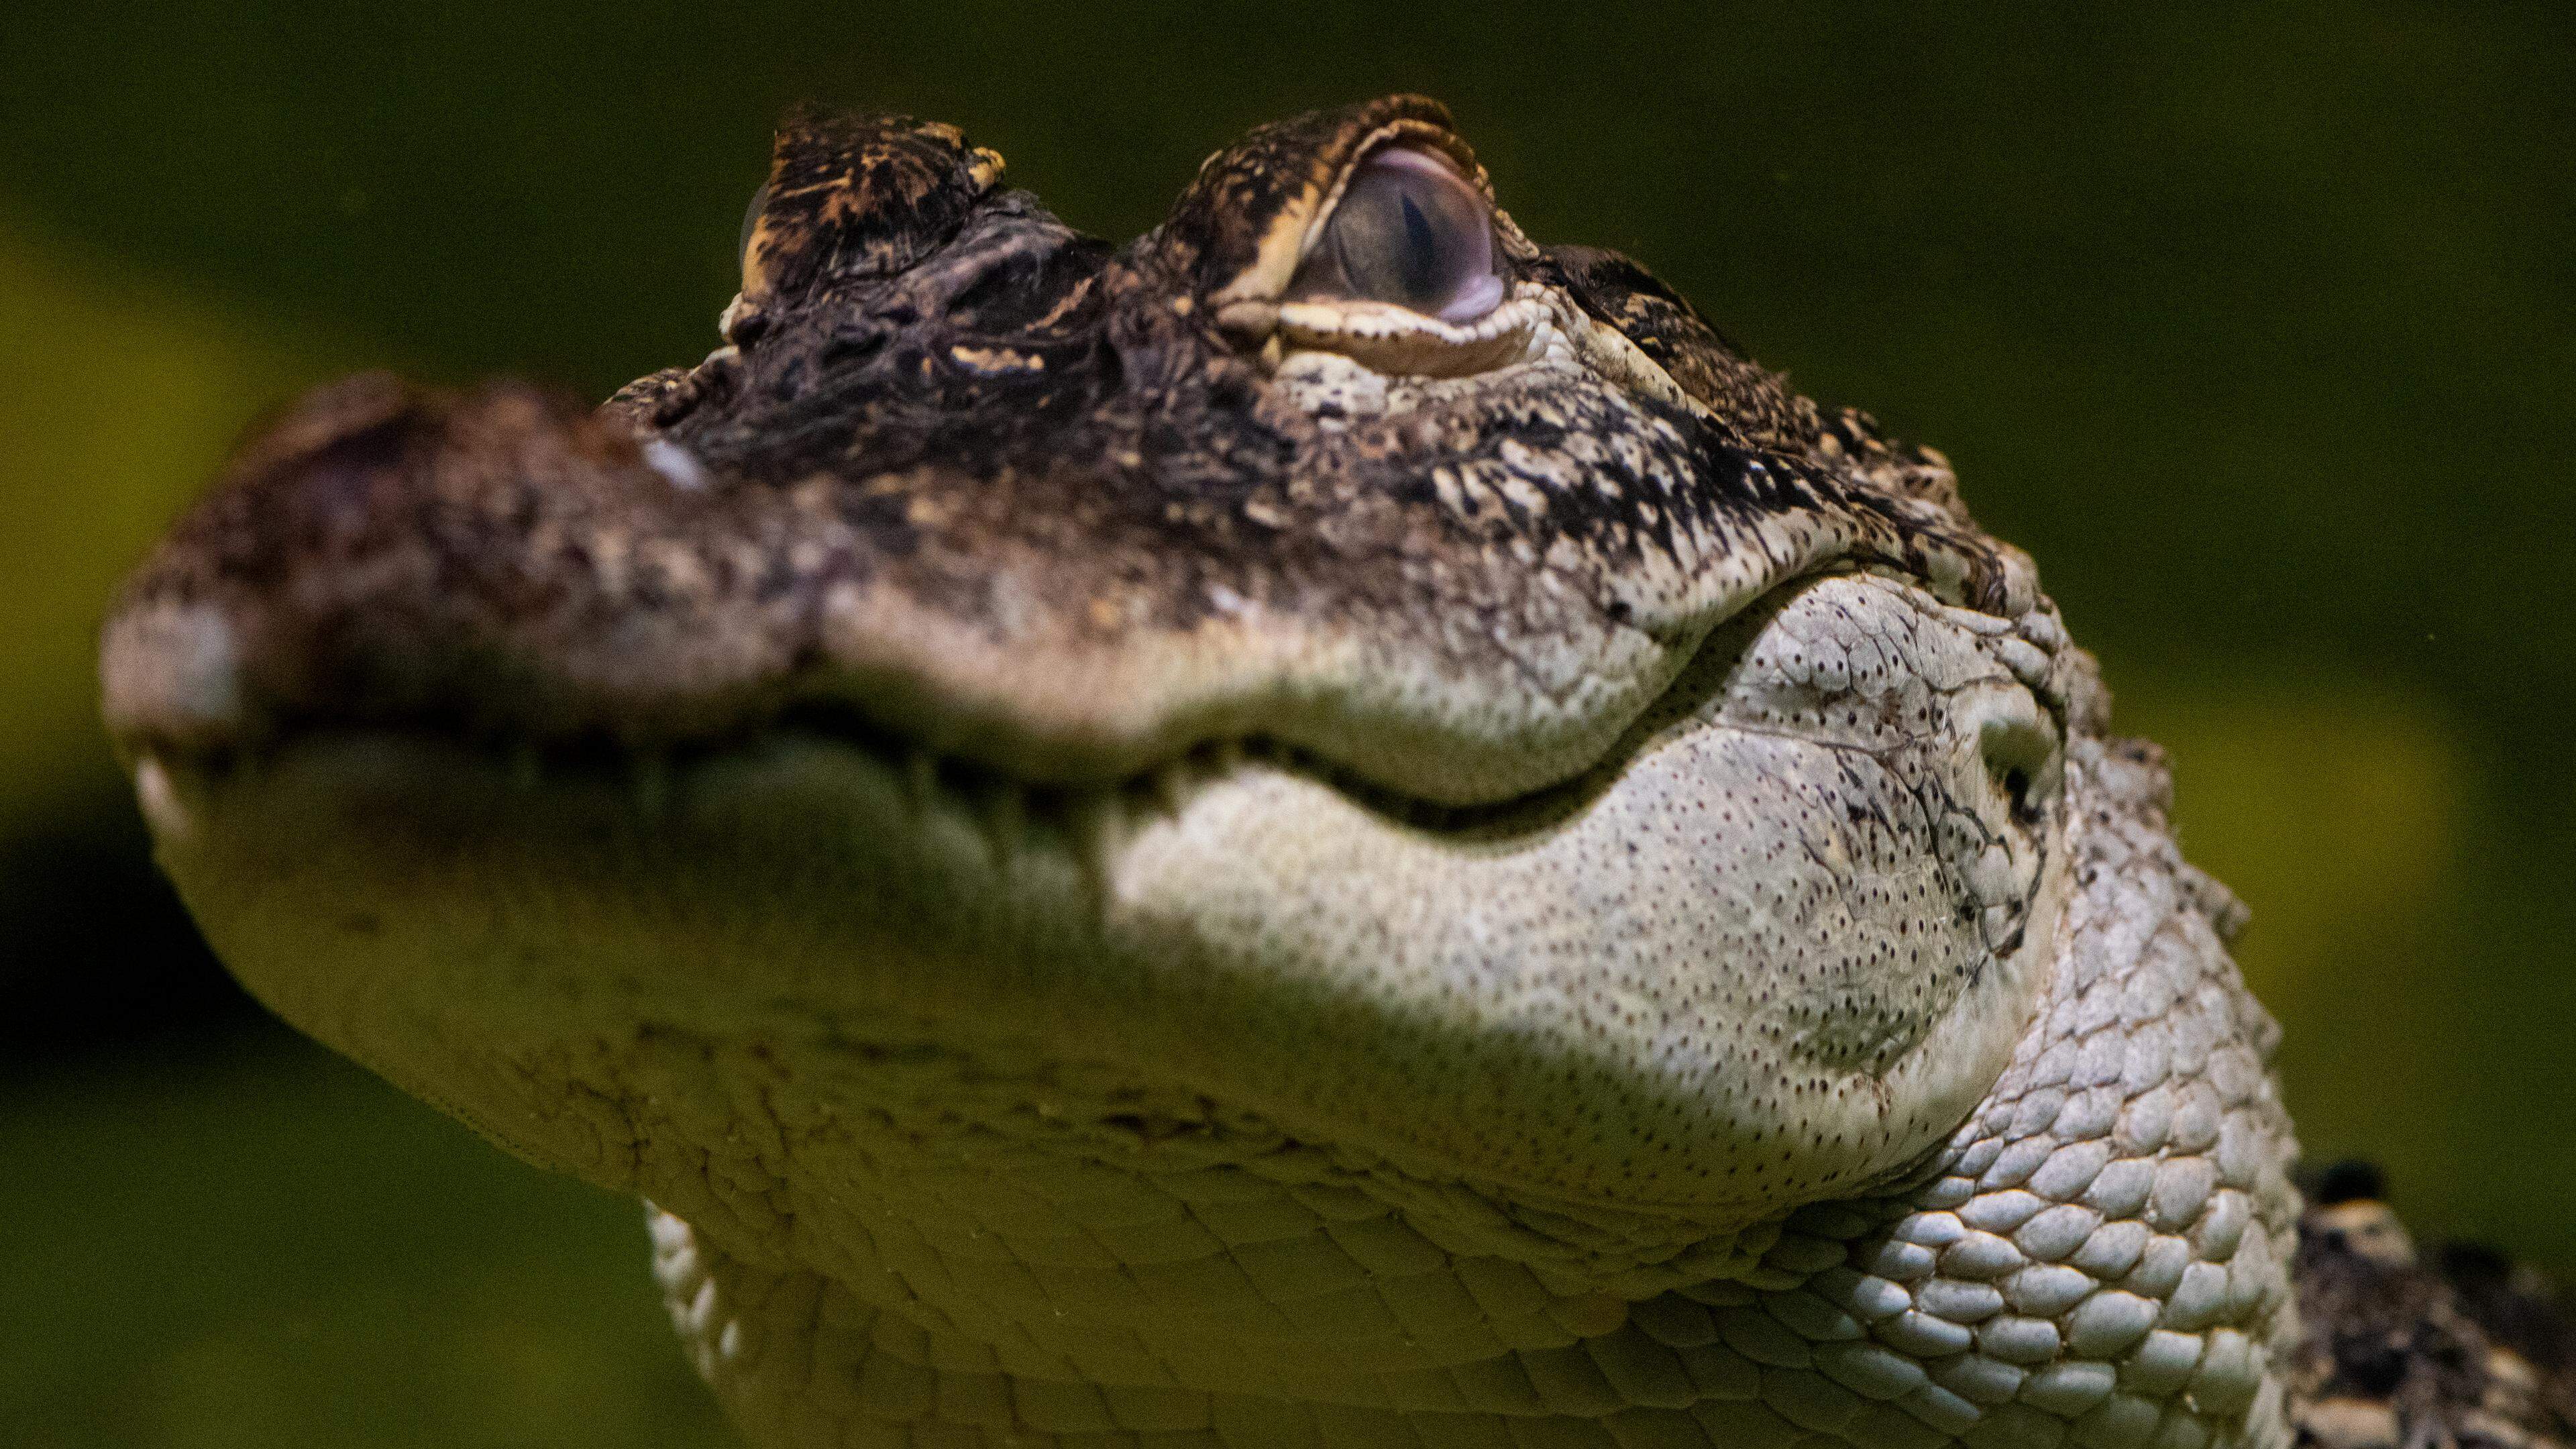 Des alligators seront visibles pour la première fois au zoo d’Amnéville cet été. Ils vont investir l’espèce qui accueillait autrefois les caïmans, et vont cohabiter avec des tortues hargneuses.